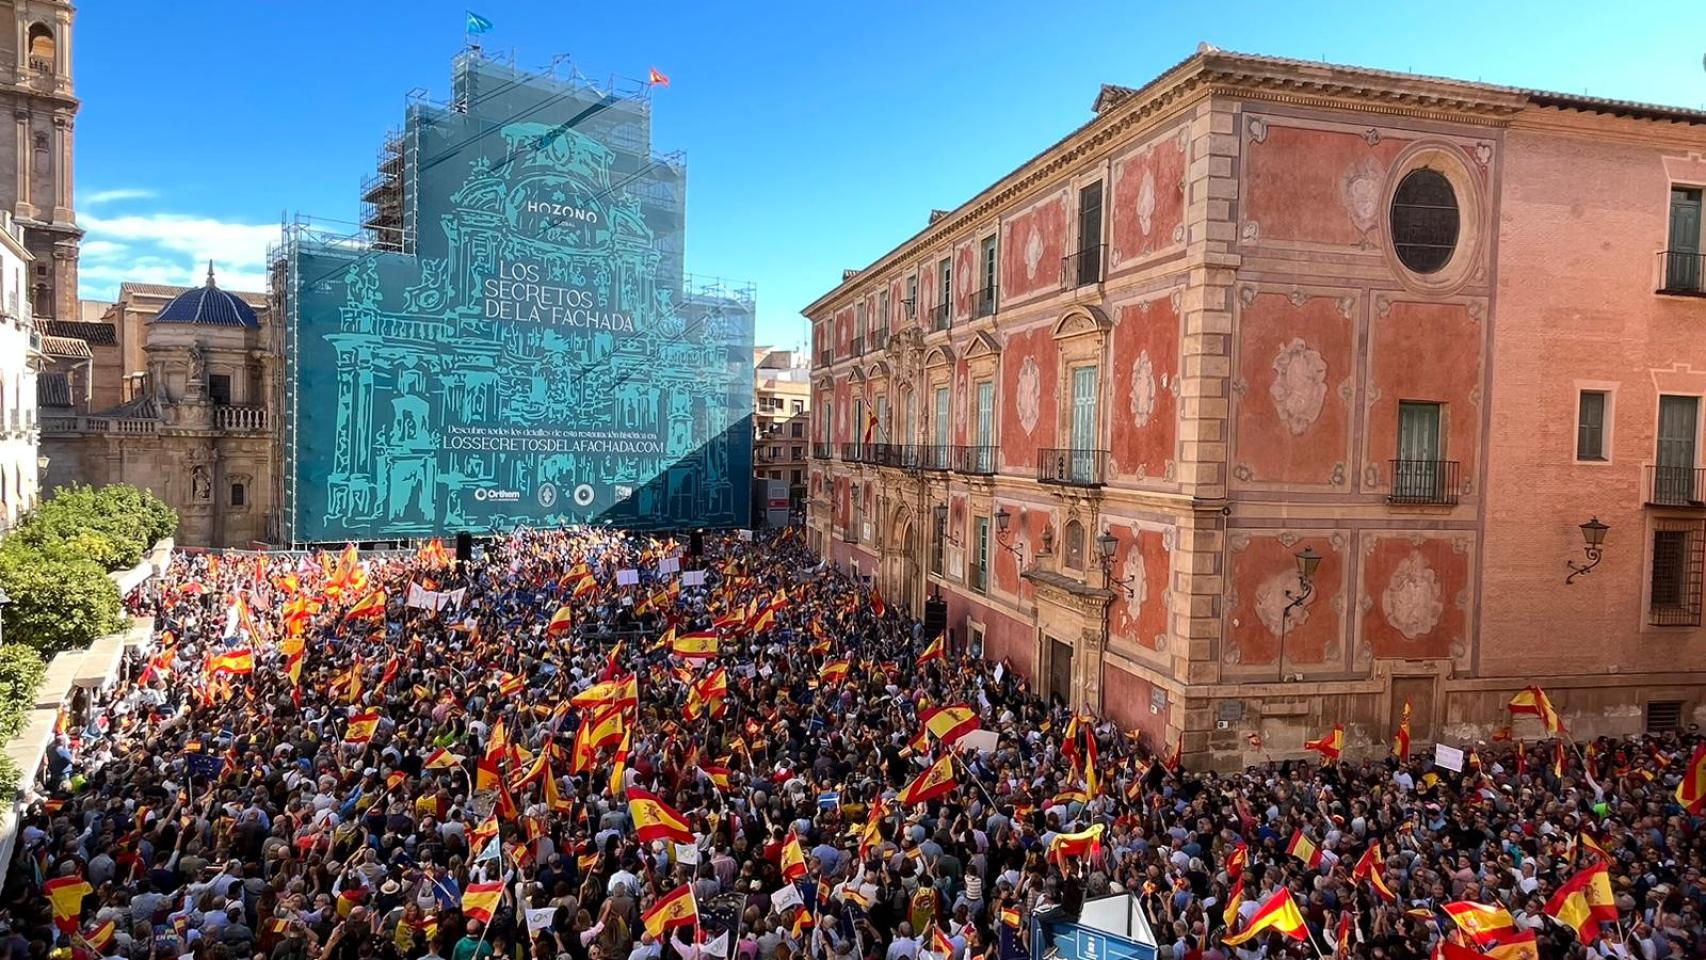 Una vista aérea de la plaza Cardenal Belluga de Murcia, este domingo, colapsada durante la protesta contra la amnistía.